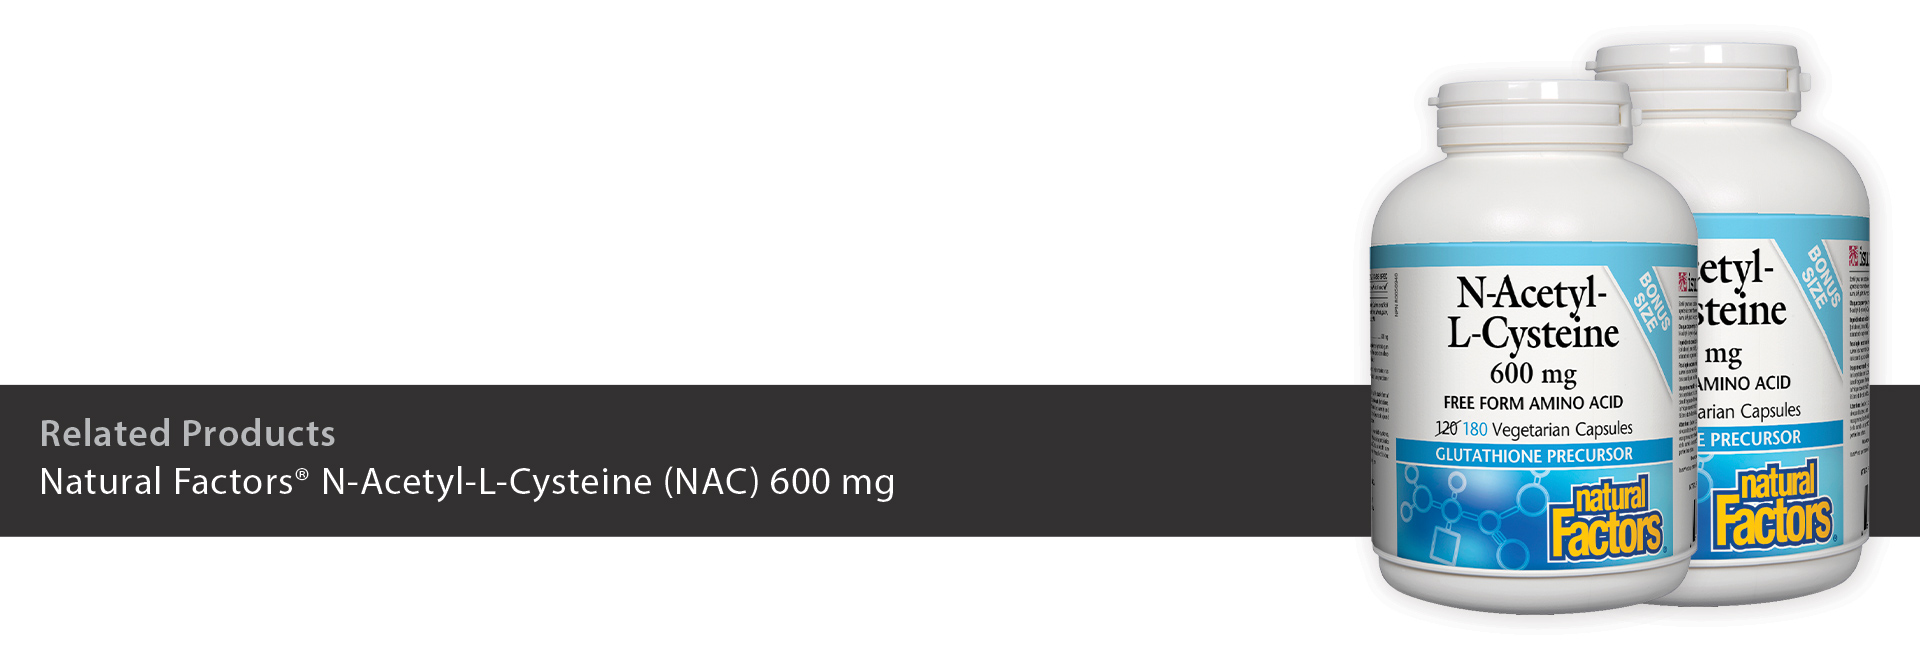 Natural Factors® N-Acetyl-L-Cysteine (NAC) 600 mg